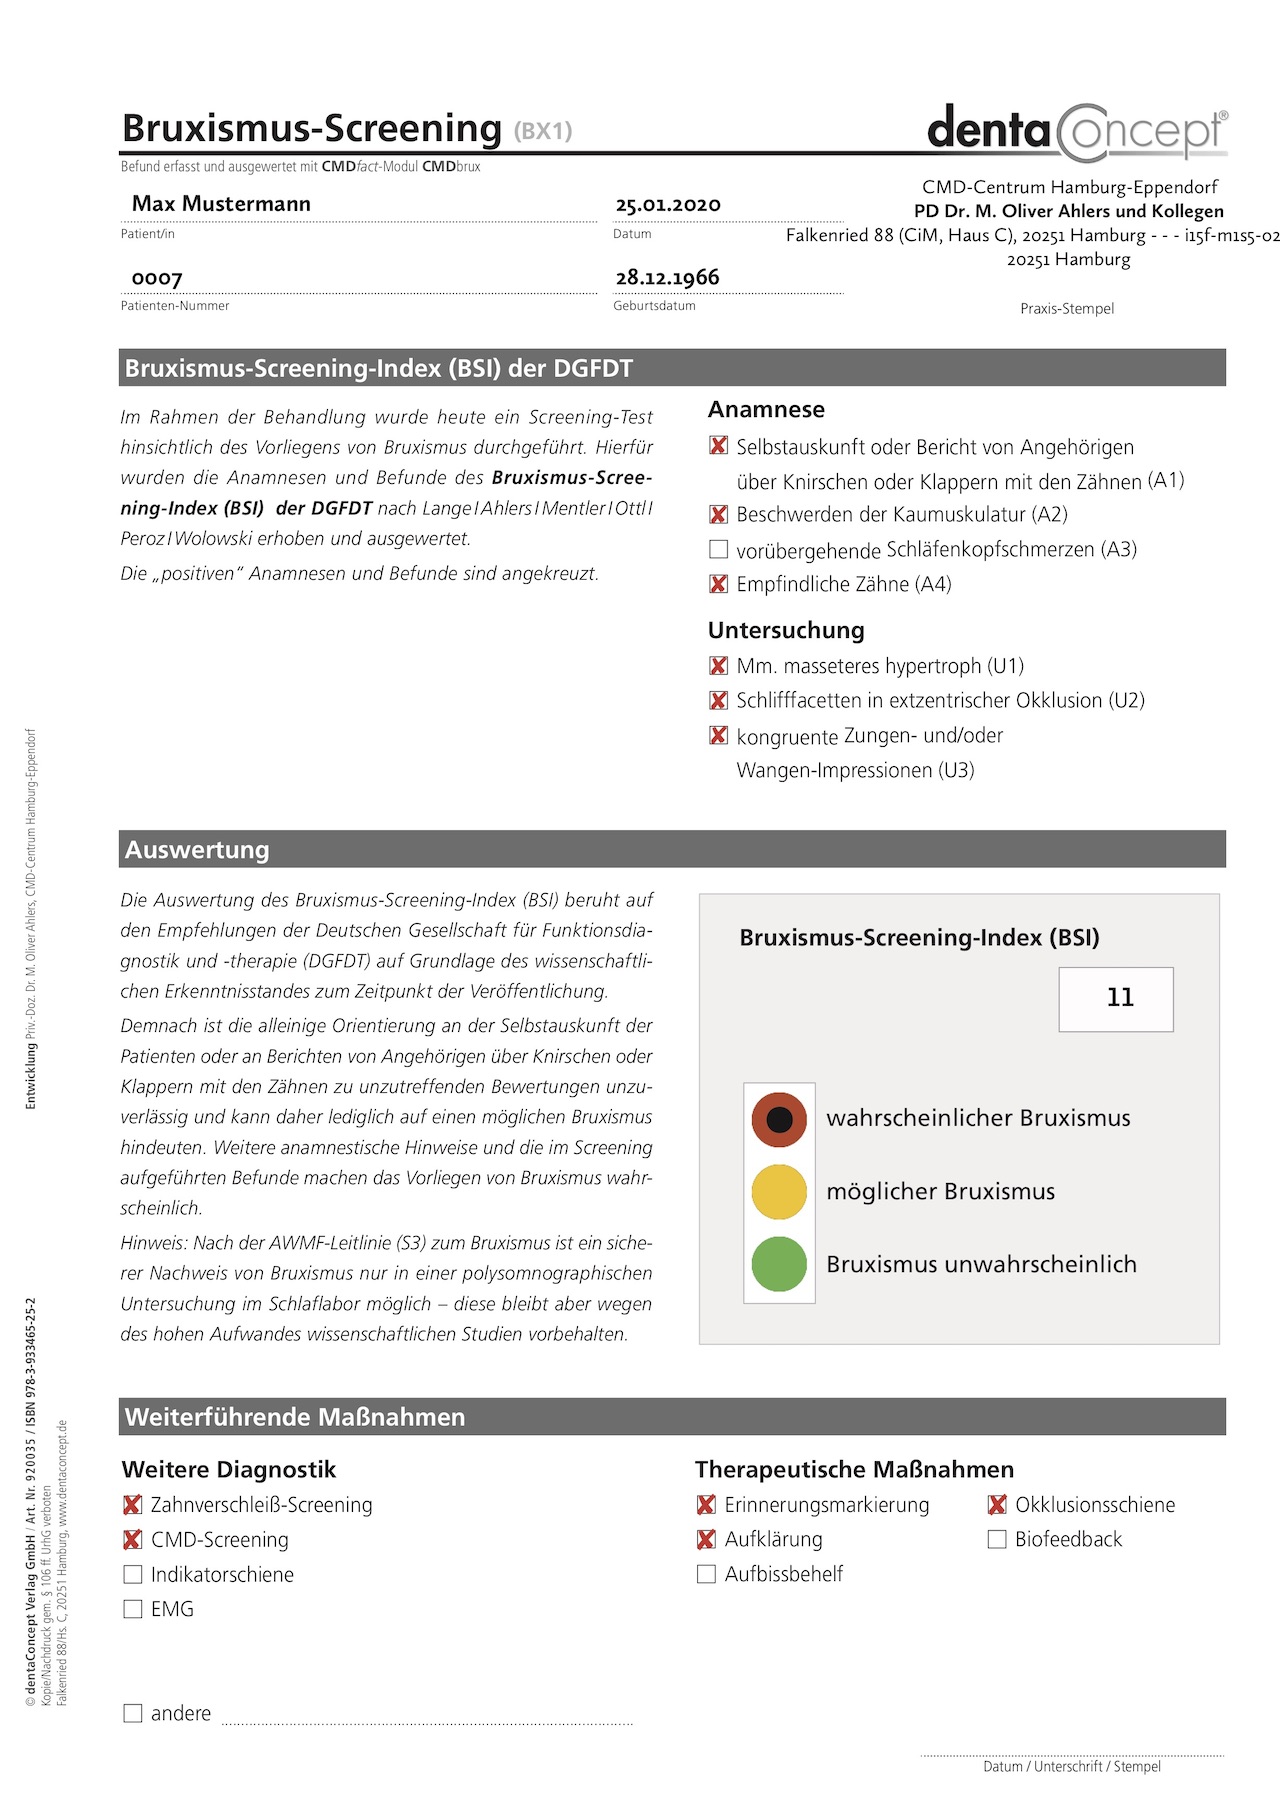 Abb. 3: Befundbogen Bruxismus-Screening-Index (BSI) mit Zusatzdokumentationen